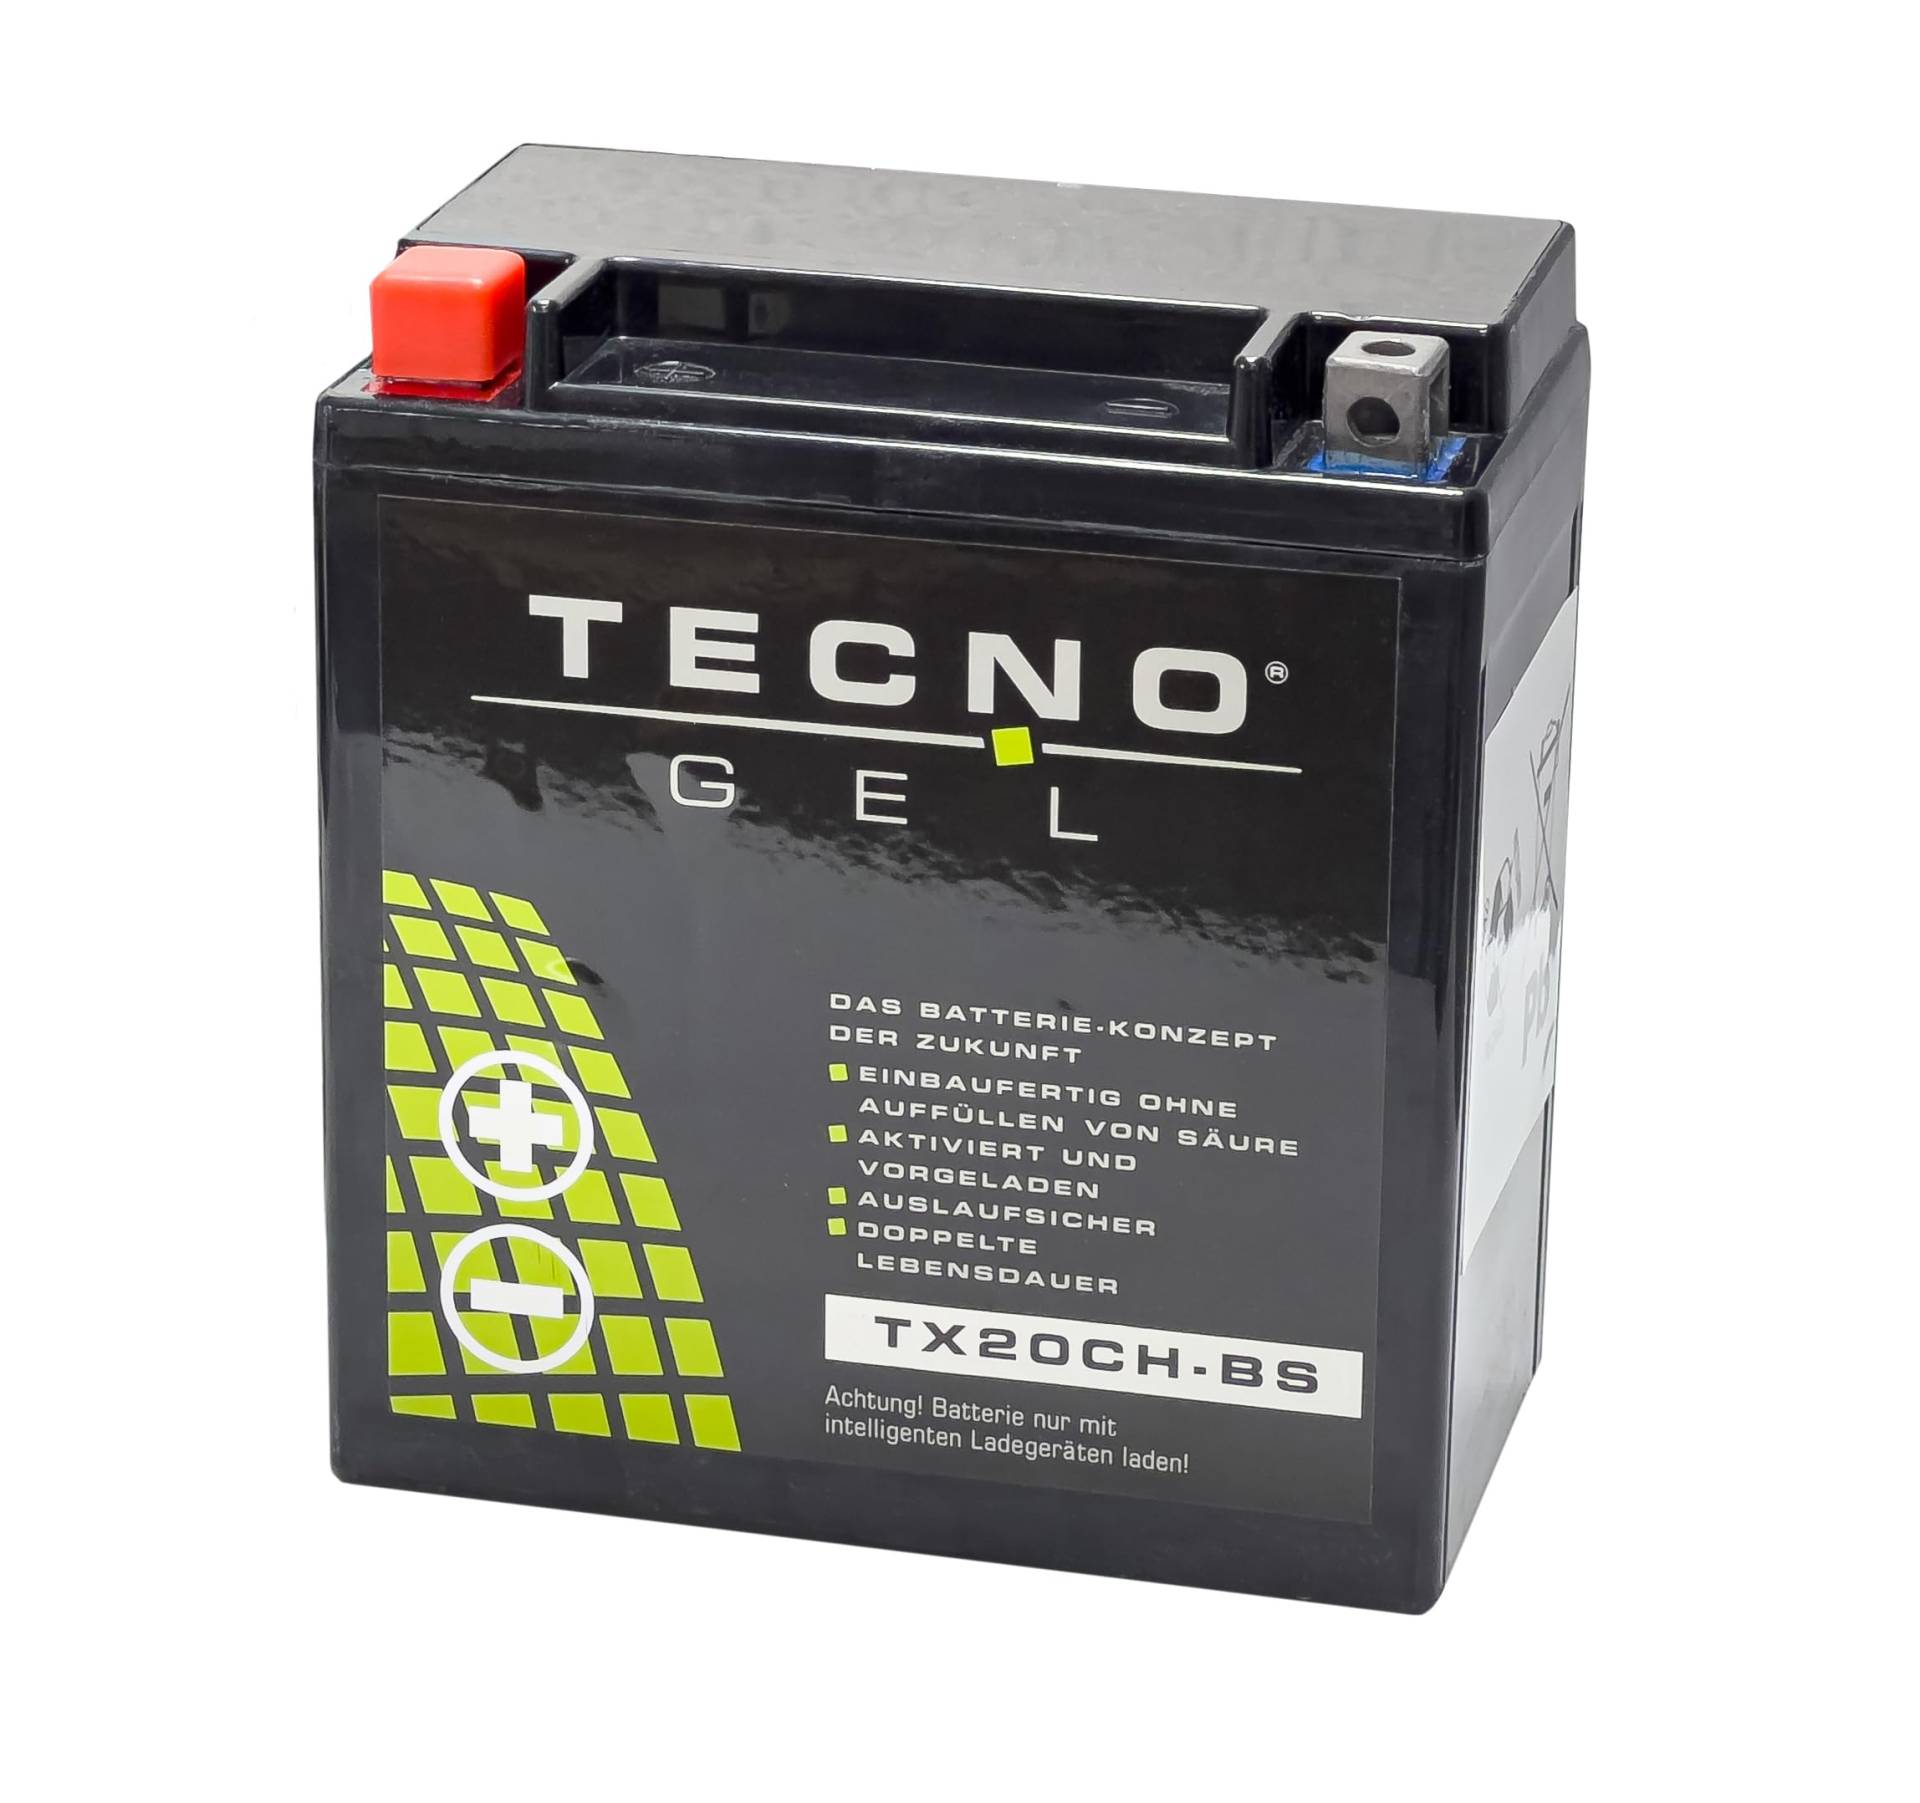 TECNO-GEL Motorrad-Batterie für YTX20CH-BS für MOTO GUZZI Stelvio 1200 2009-2017, 12V Gel-Batterie 18Ah, 150x87x161 mm von Wirth-Federn